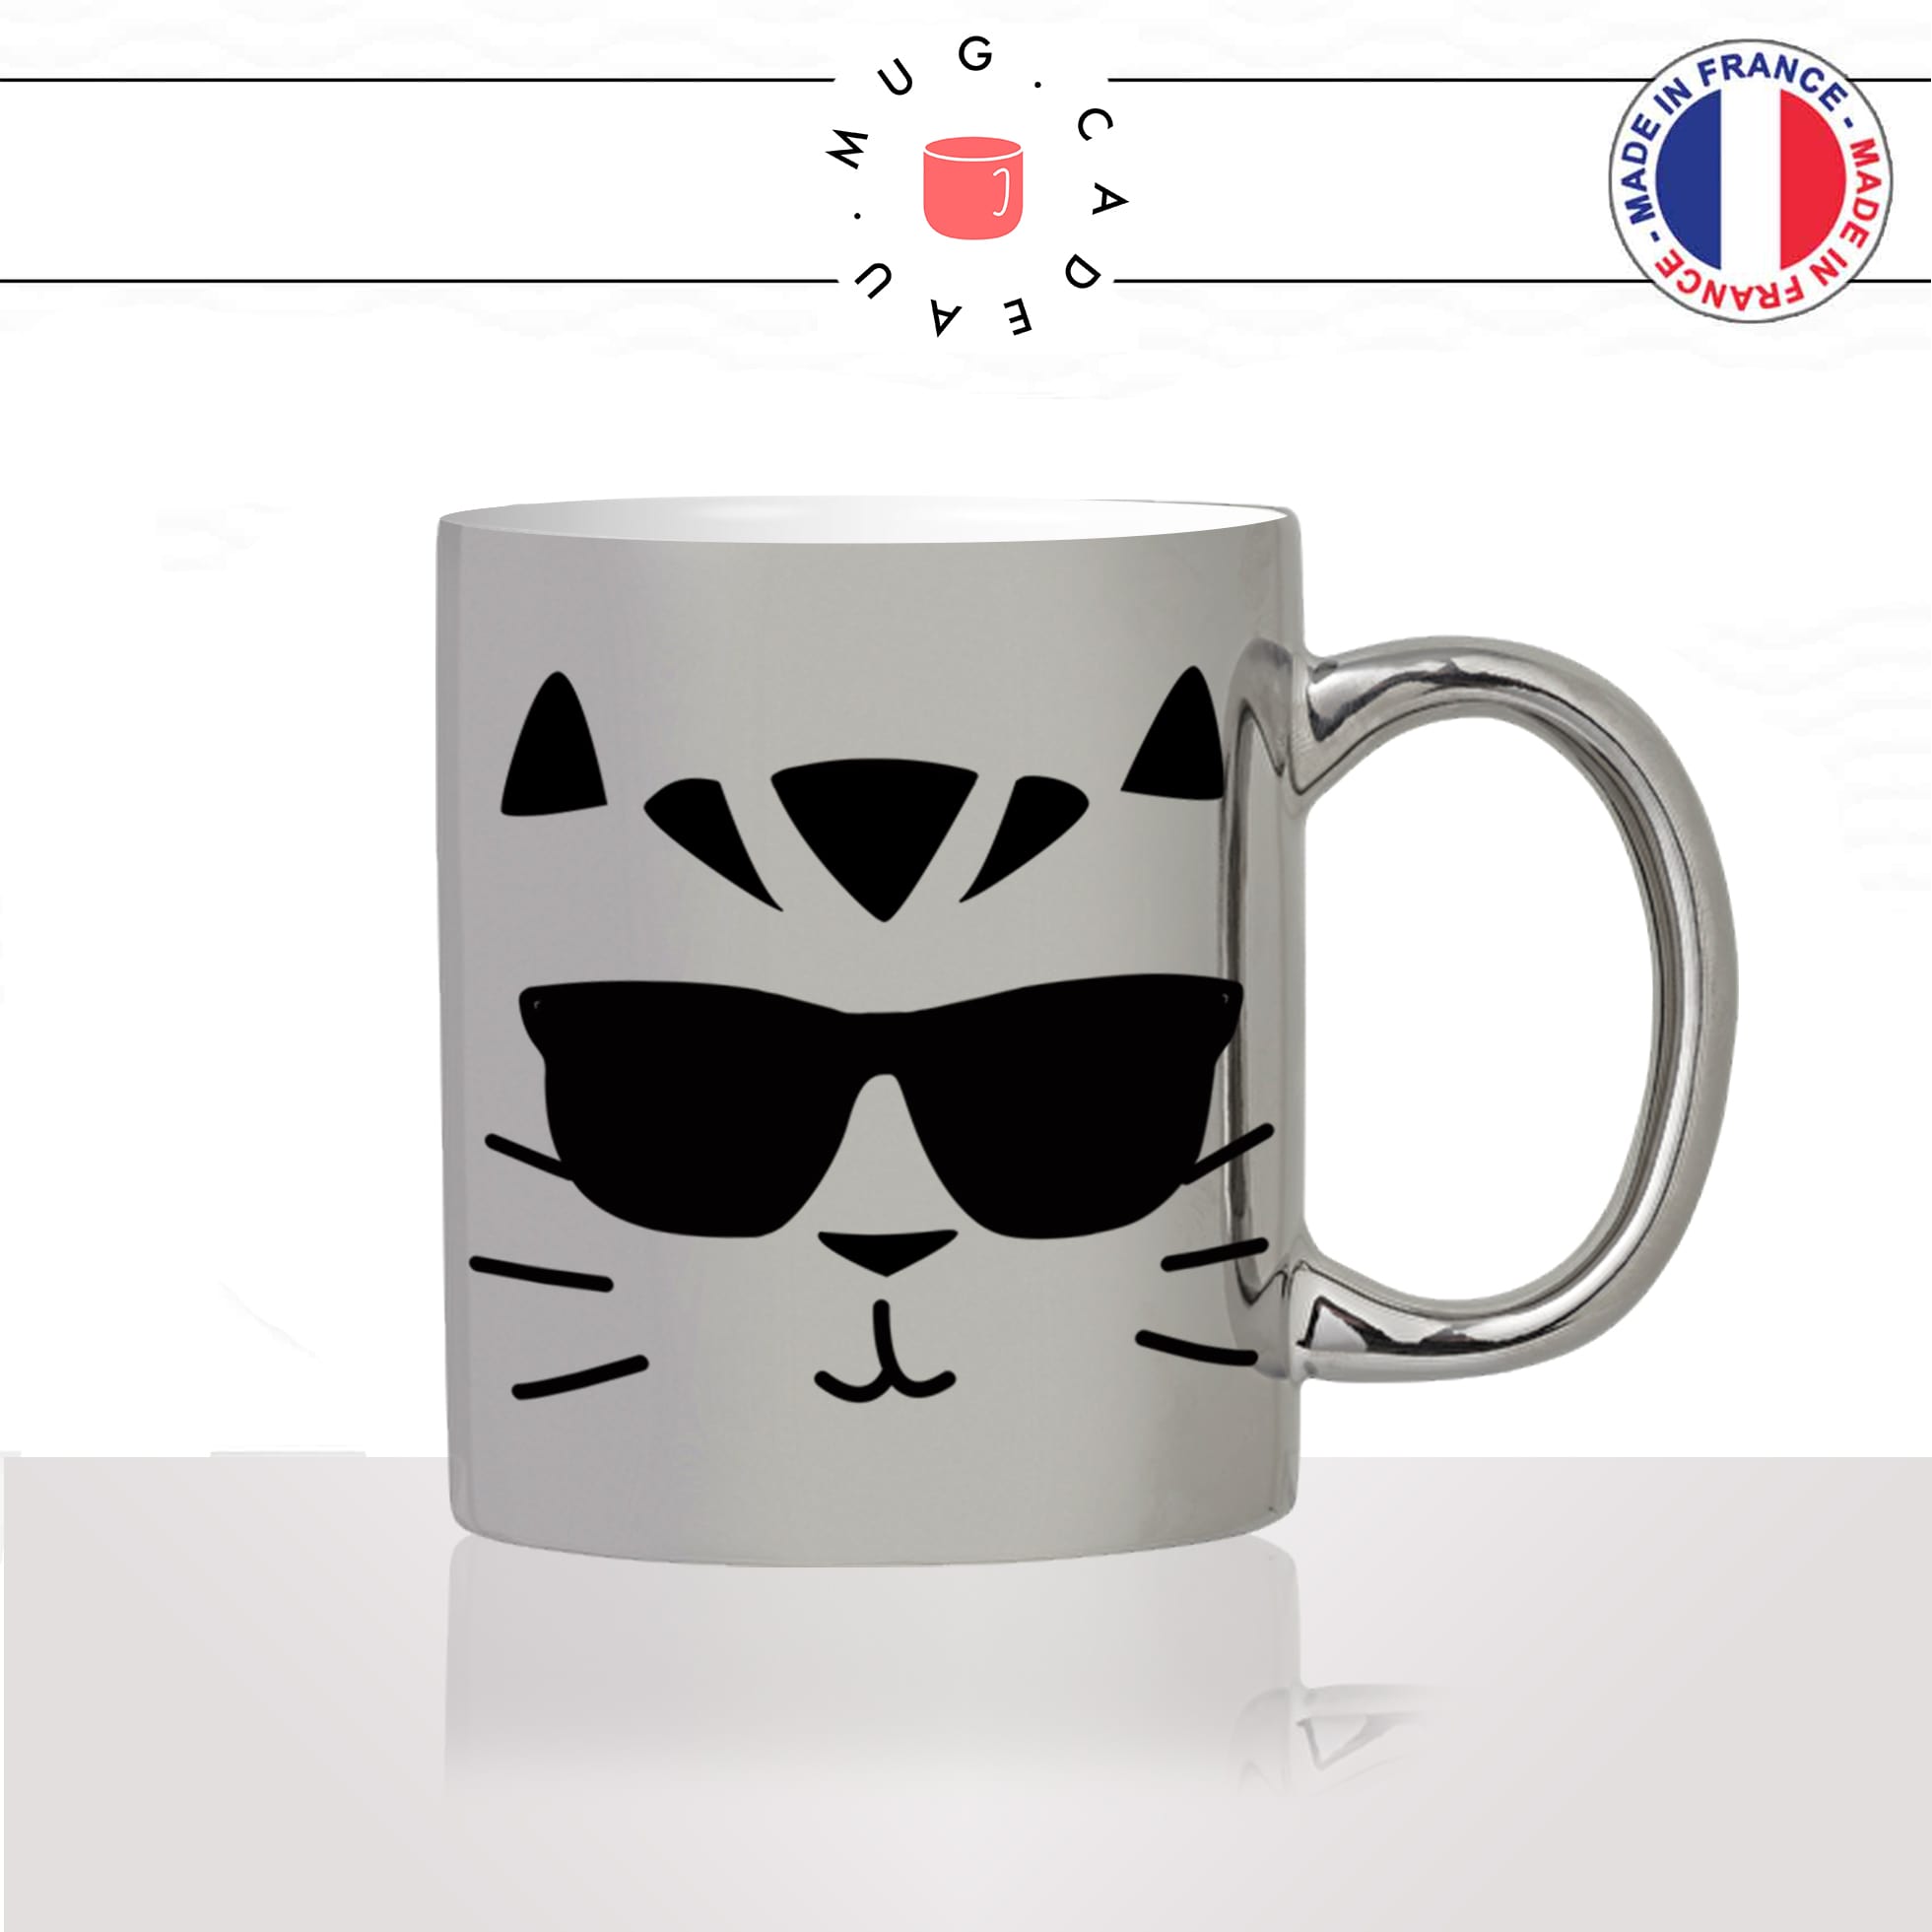 mug-tasse-argenté-silver-tete-de-chat-lunettes-de-soleil-cool-mignon-animal-chaton-noir-fun-café-thé-idée-cadeau-original-personnalisé2-min